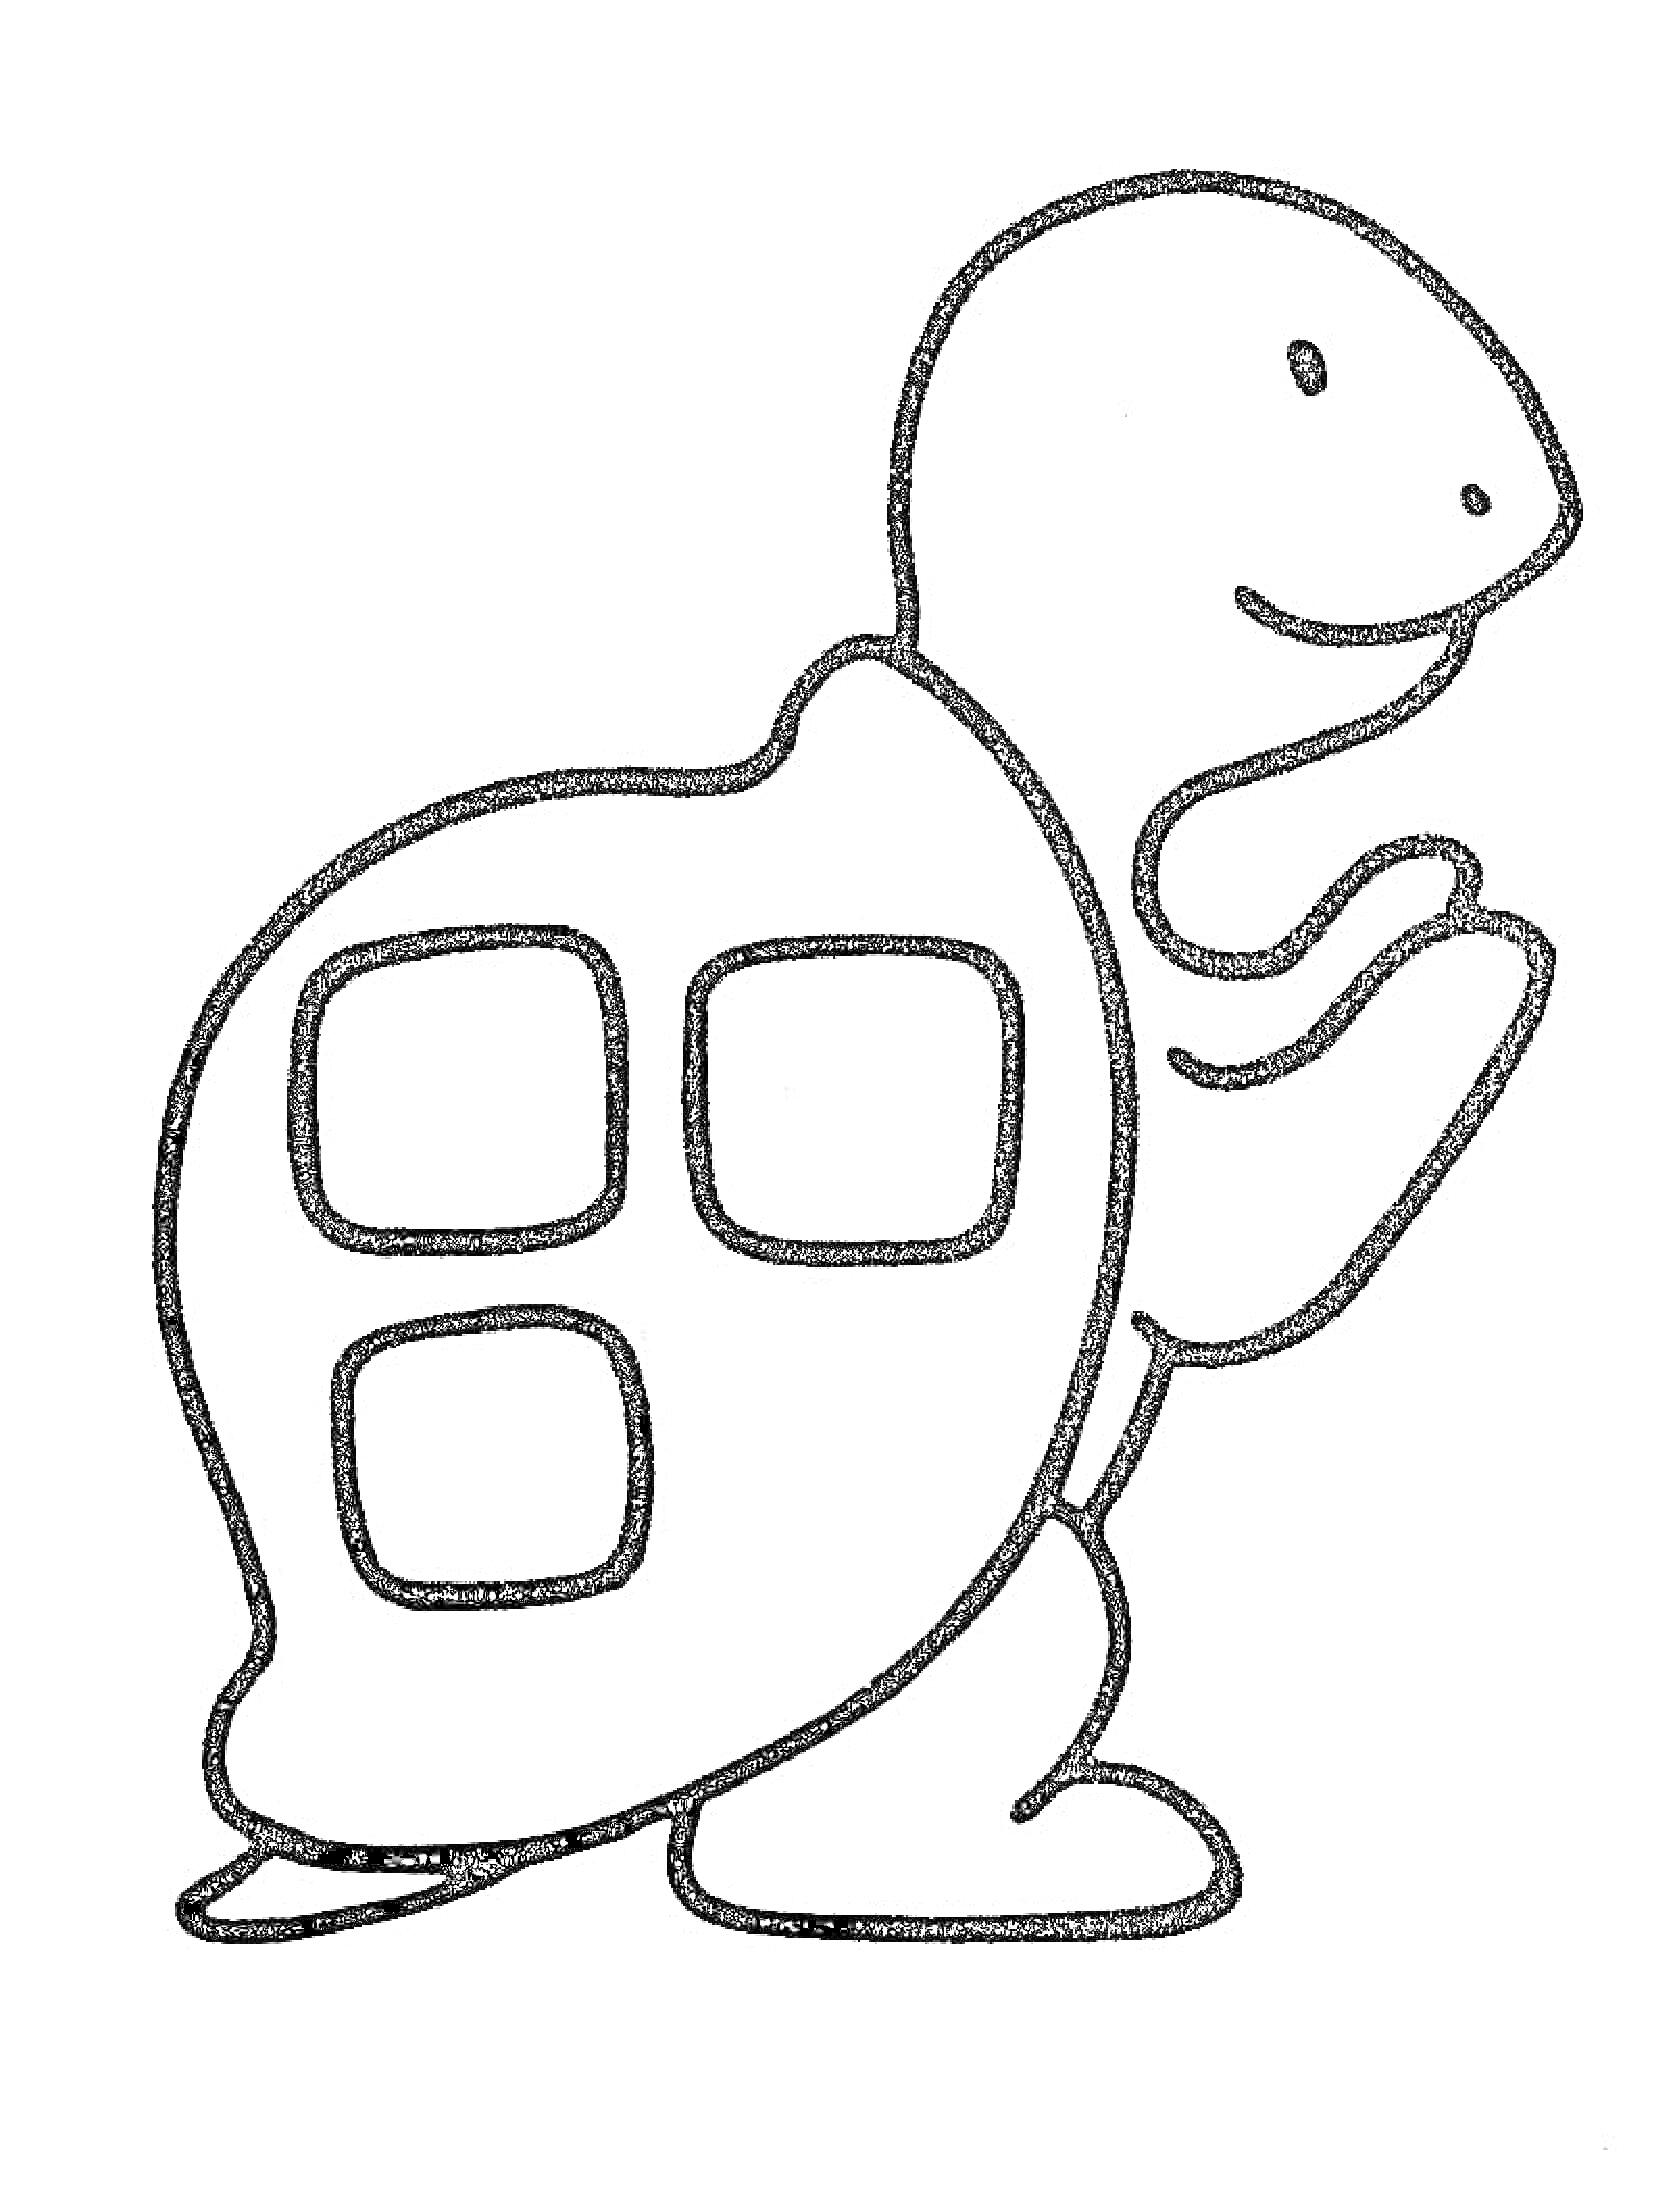 Раскраска Черепаха с квадратными элементами на панцире